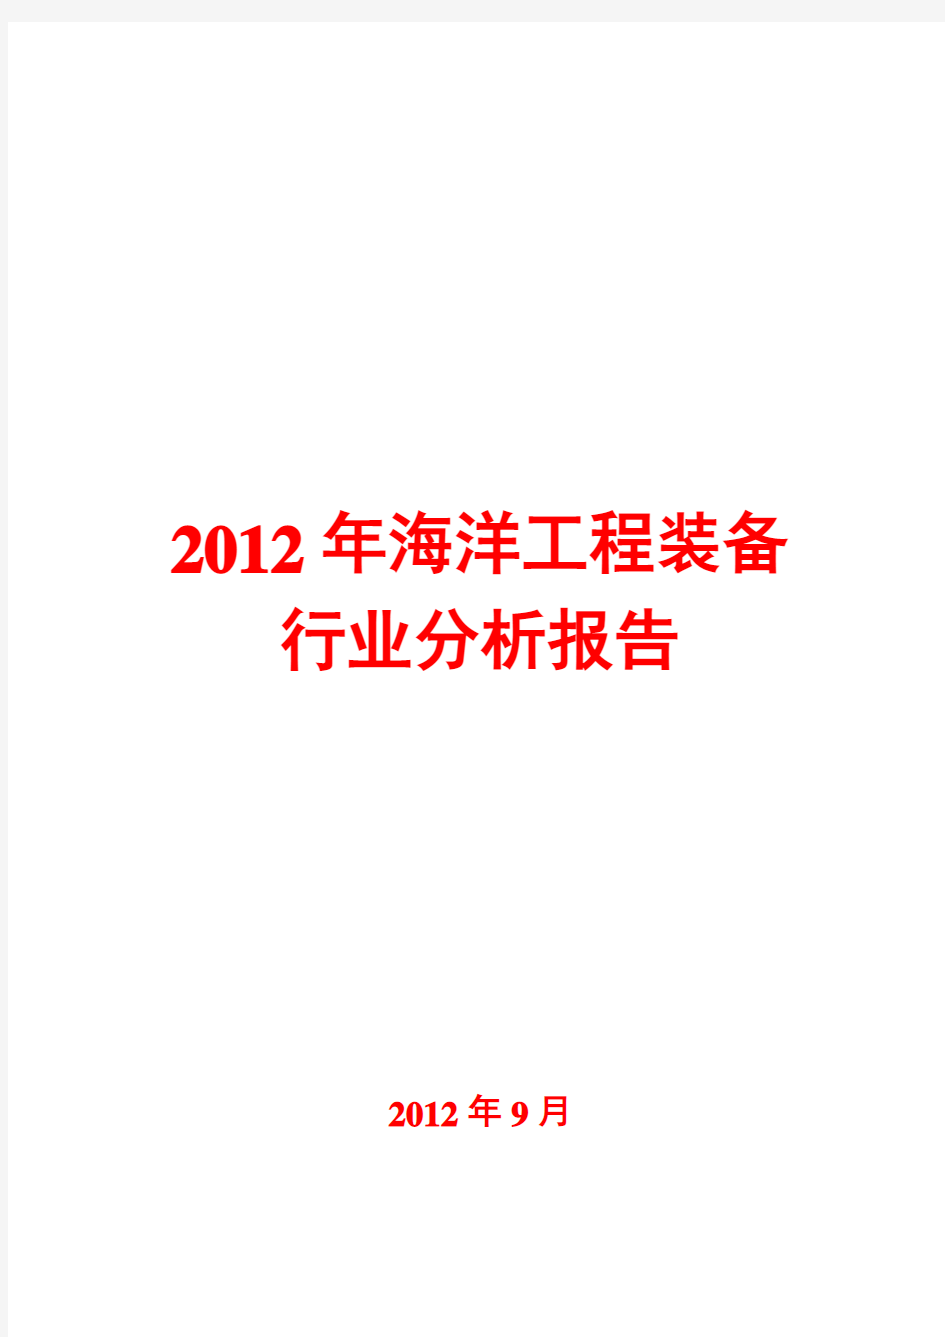 海洋工程装备行业分析报告2012